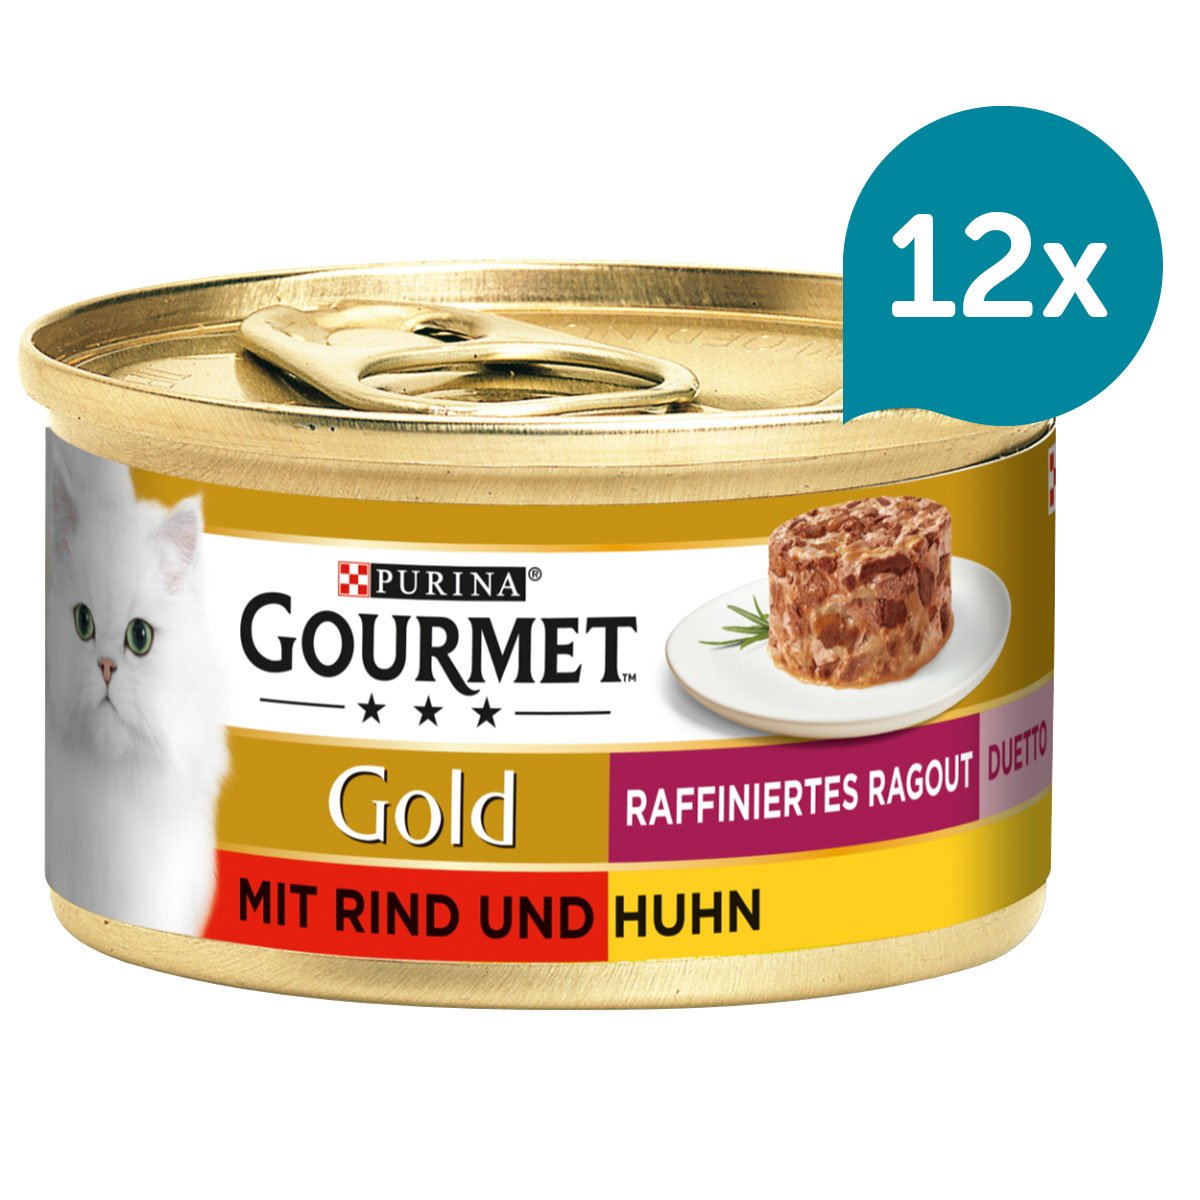 GOURMET Gold Raffiniertes Ragout Duetto mit Rind und Huhn 12x85g